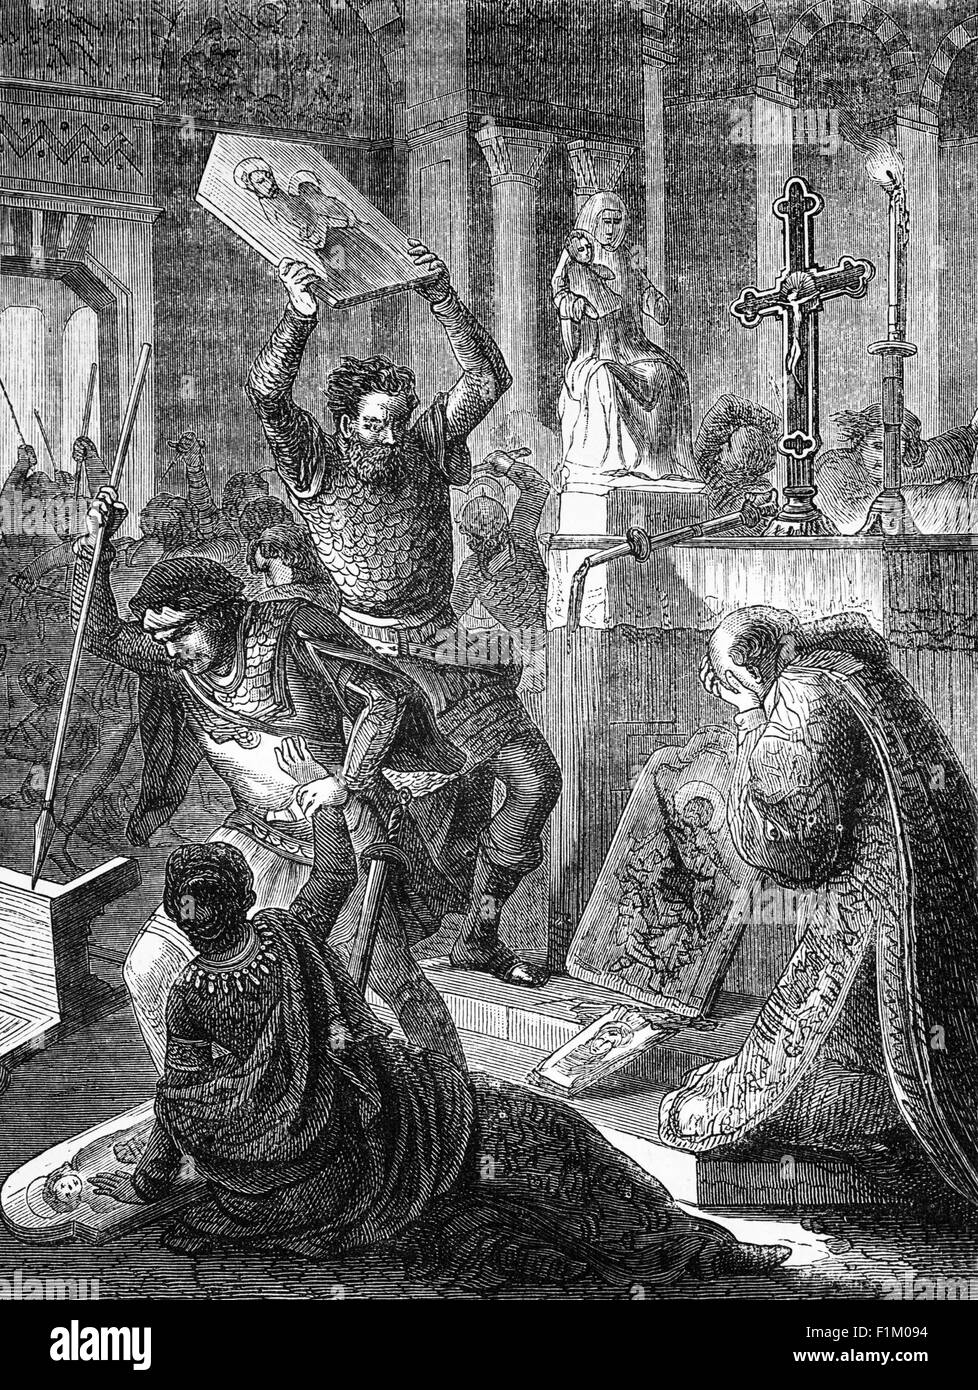 Die Reformation in Westeuropa während des 16. Jahrhunderts führten zu einer Kluft im Christentum zwischen Katholiken und Protestanten. Die Folge war Bildersturm - Bild bricht während eines Zeitraums von mittelalterlichen Fanatismus in England. Stockfoto